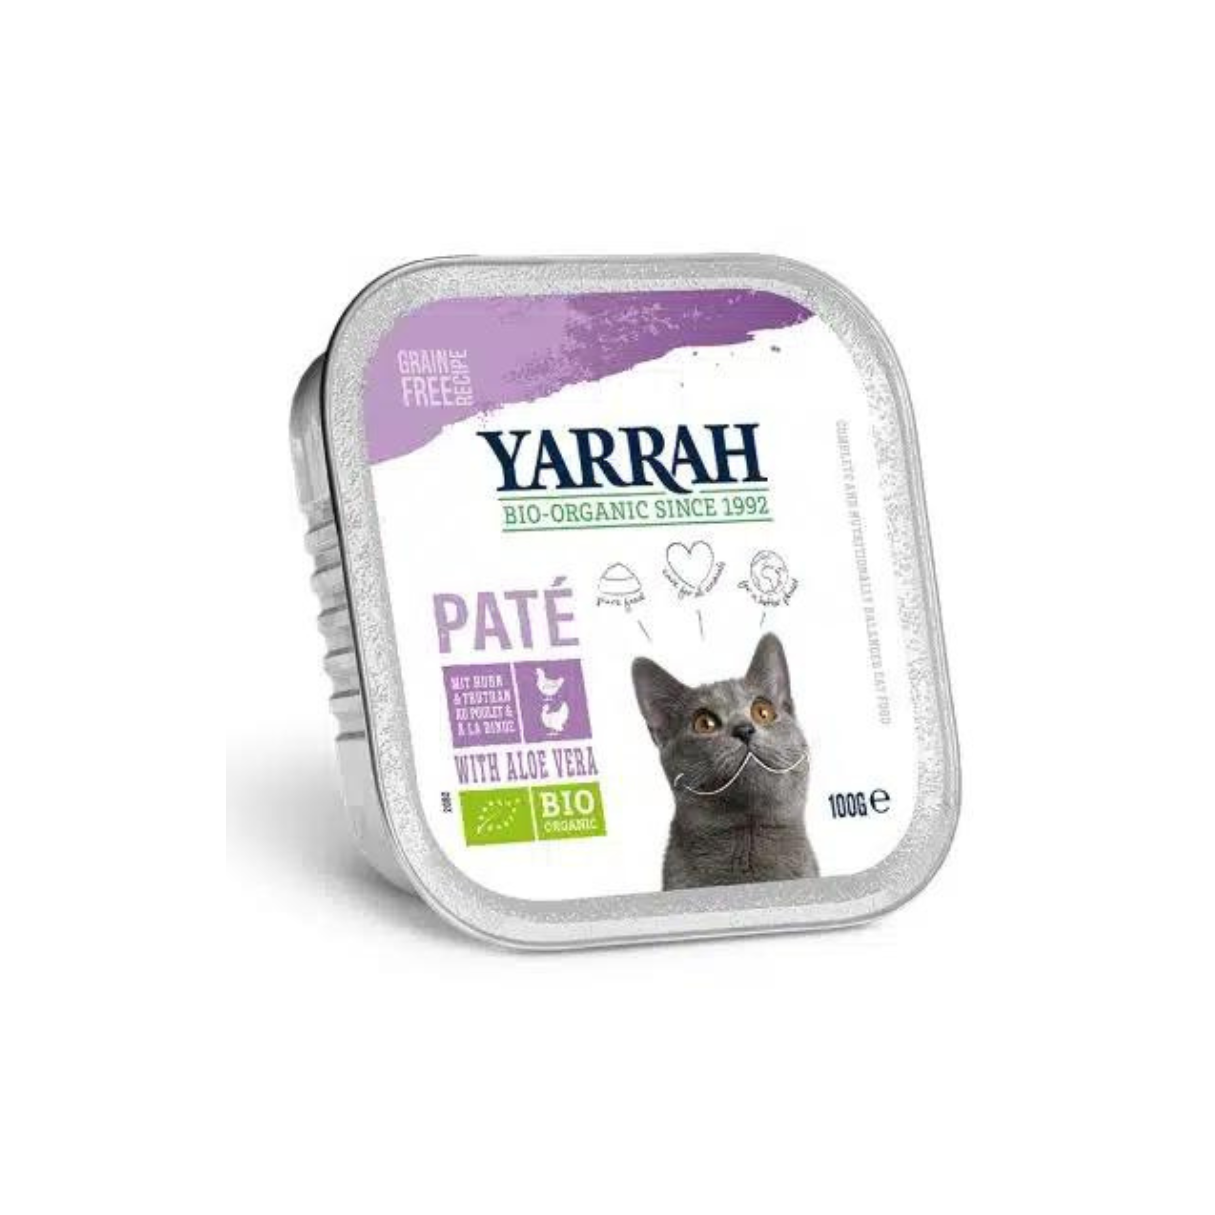 Patê Yarrah para gatos BIO peru, frango com aloe vera. Da pecuária ecológica. Não contém grãos, por isso previne alergias e promove a digestão.